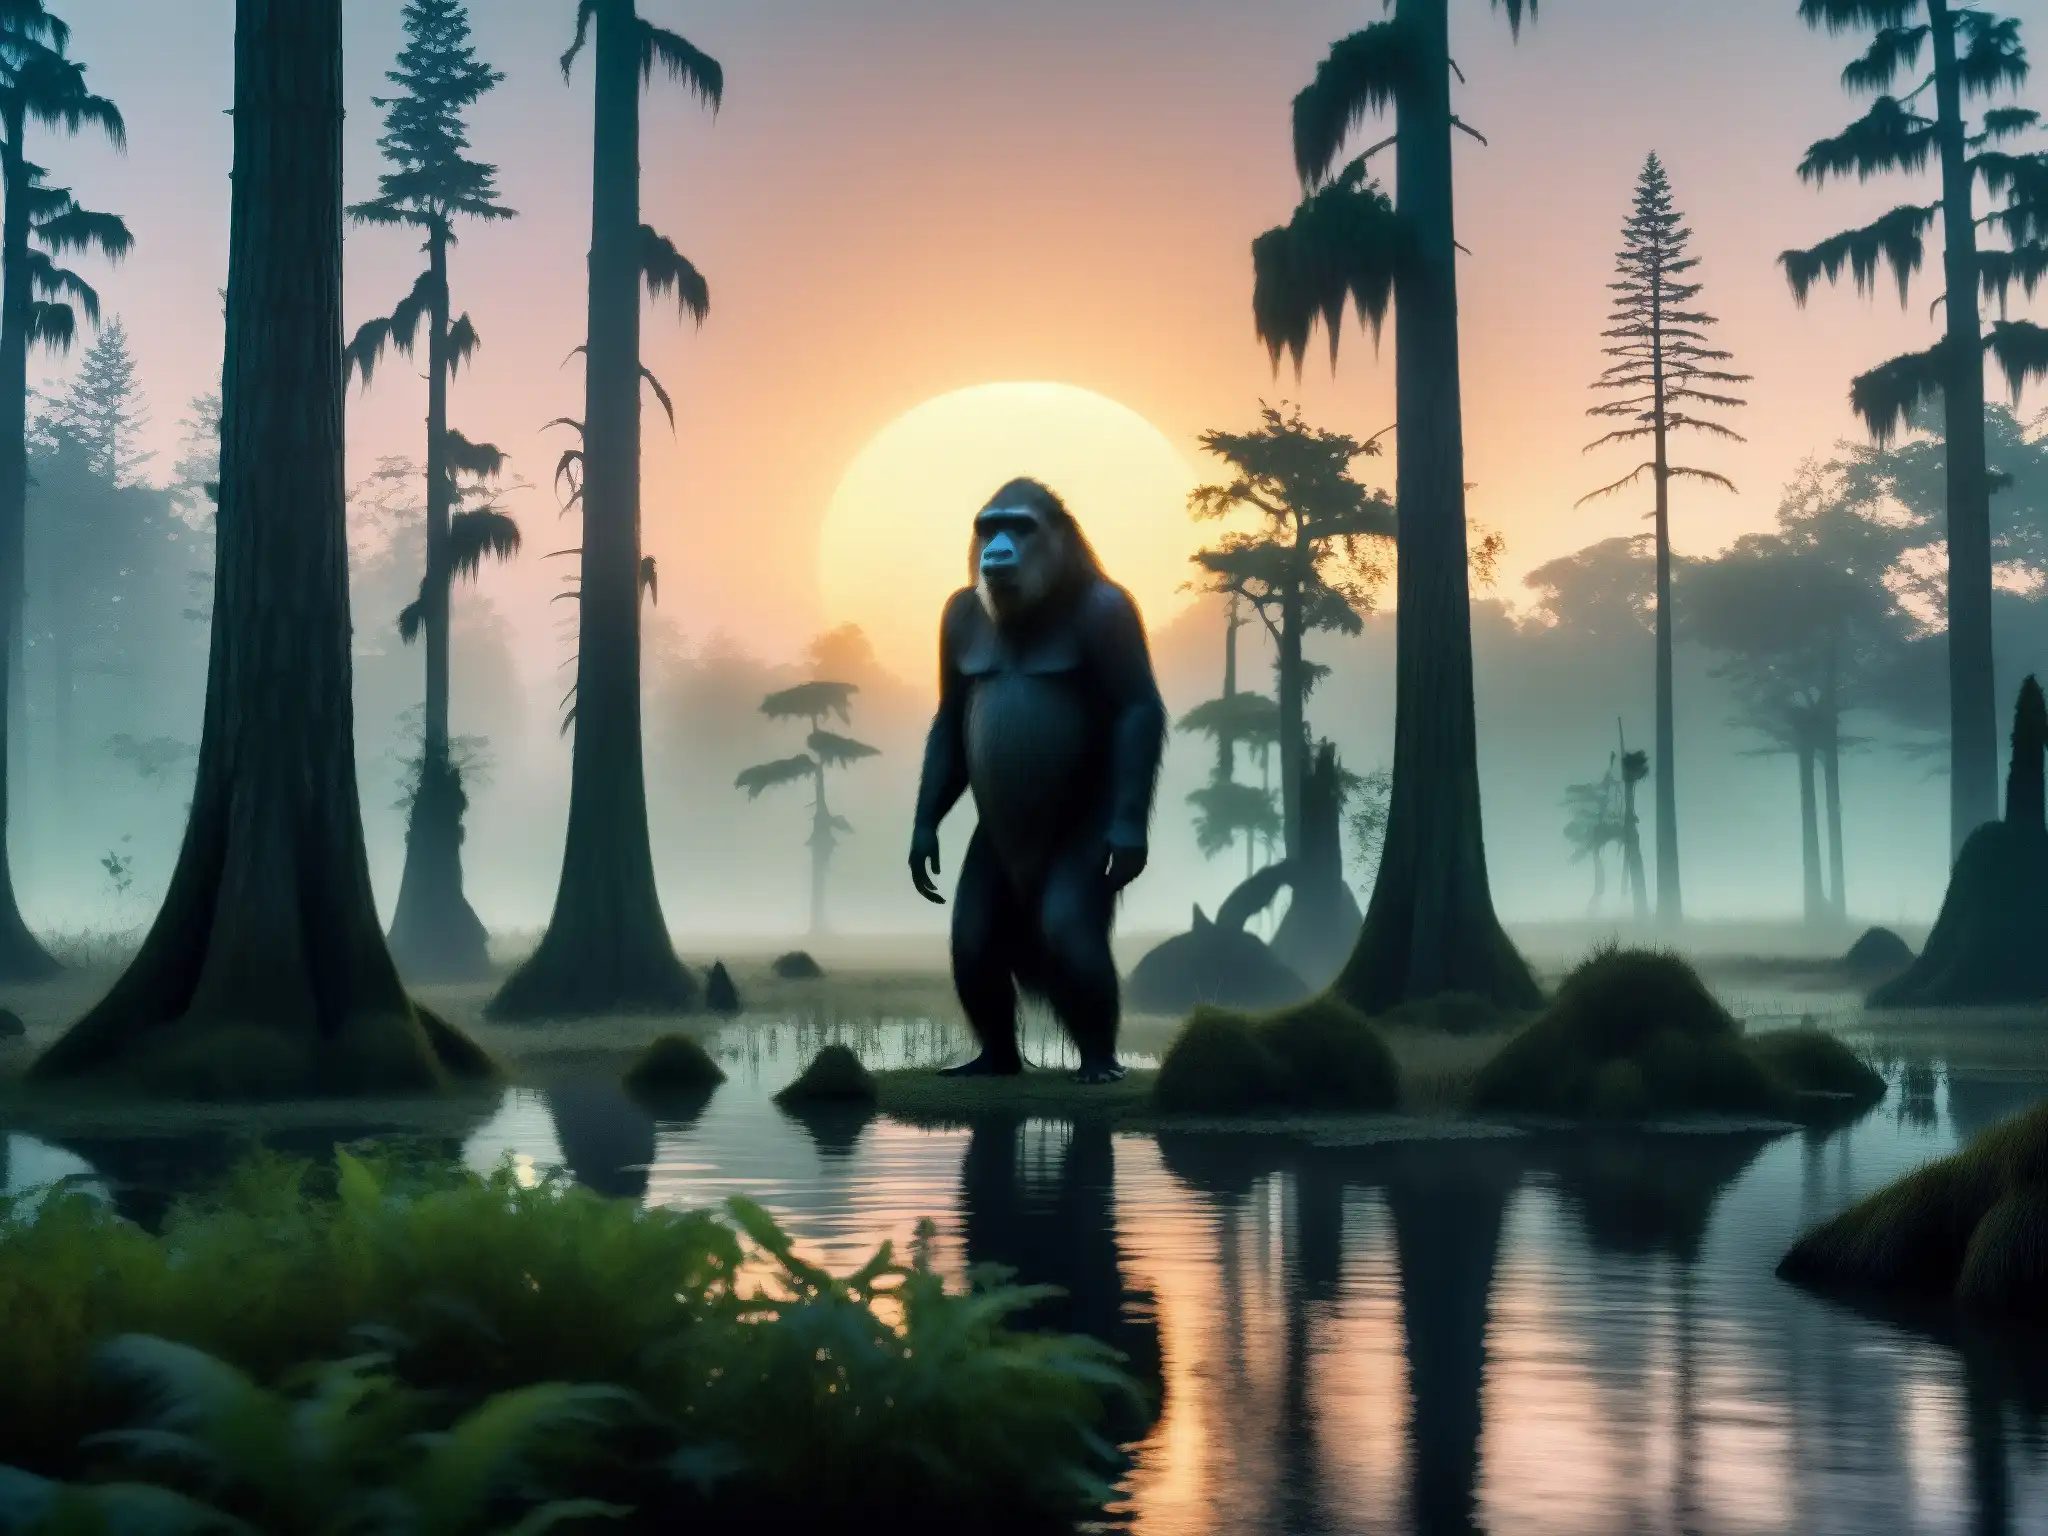 Encuentro con el Skunk Ape en un pantano brumoso al anochecer, entre sombras y misterio